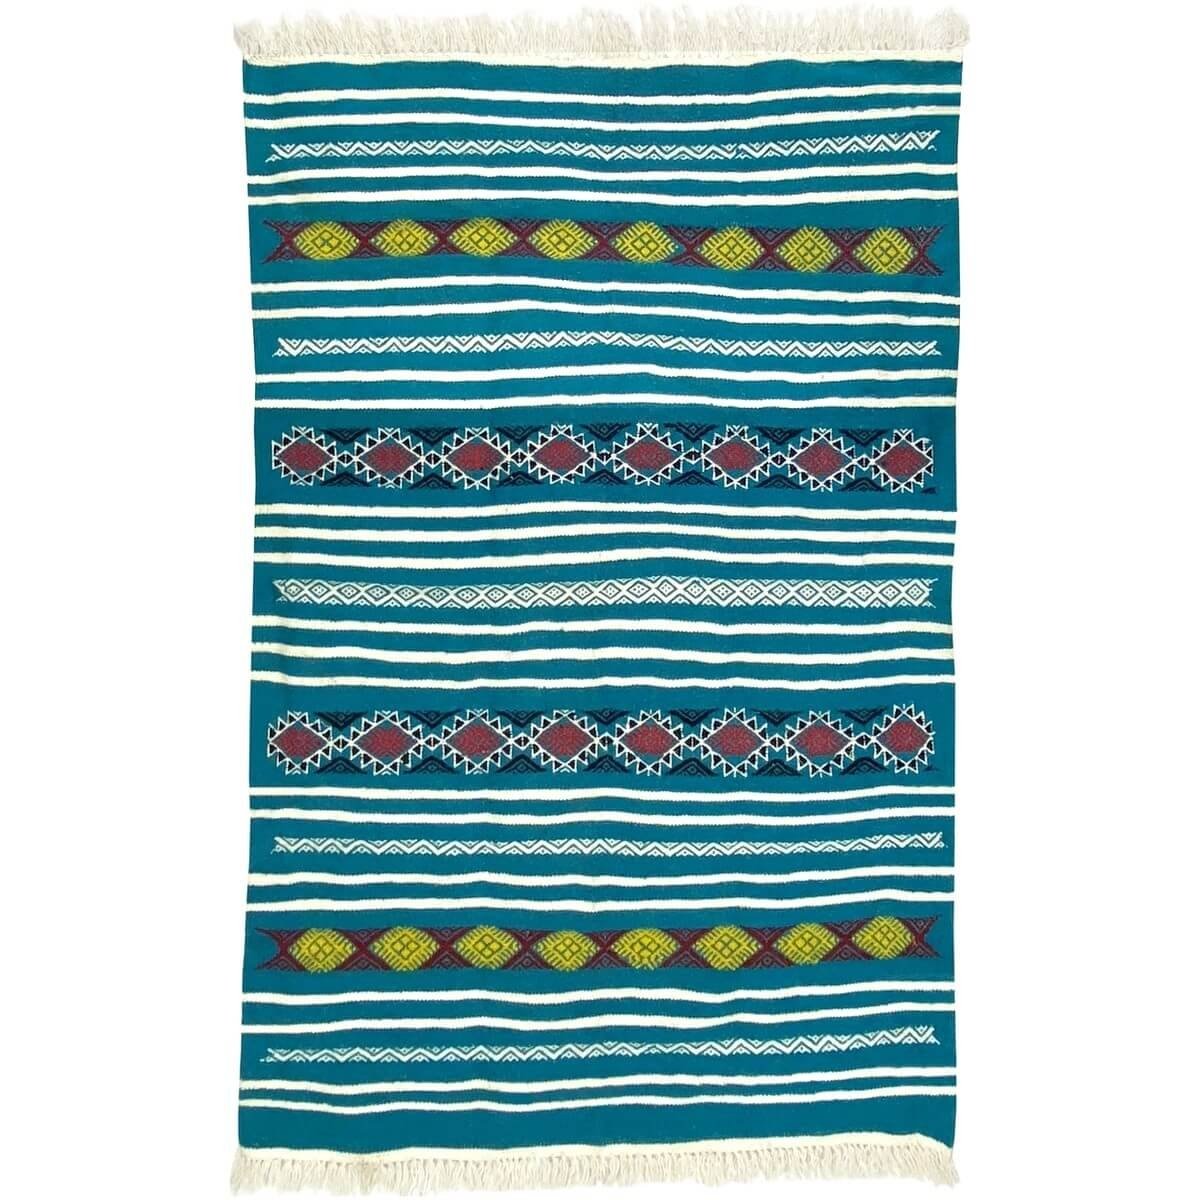 Tapete berbere Tapete Kilim Emder 107x140 Turquesa/Amarelo/Vermelho (Tecidos à mão, Lã) Tapete tunisiano kilim, estilo marroquin